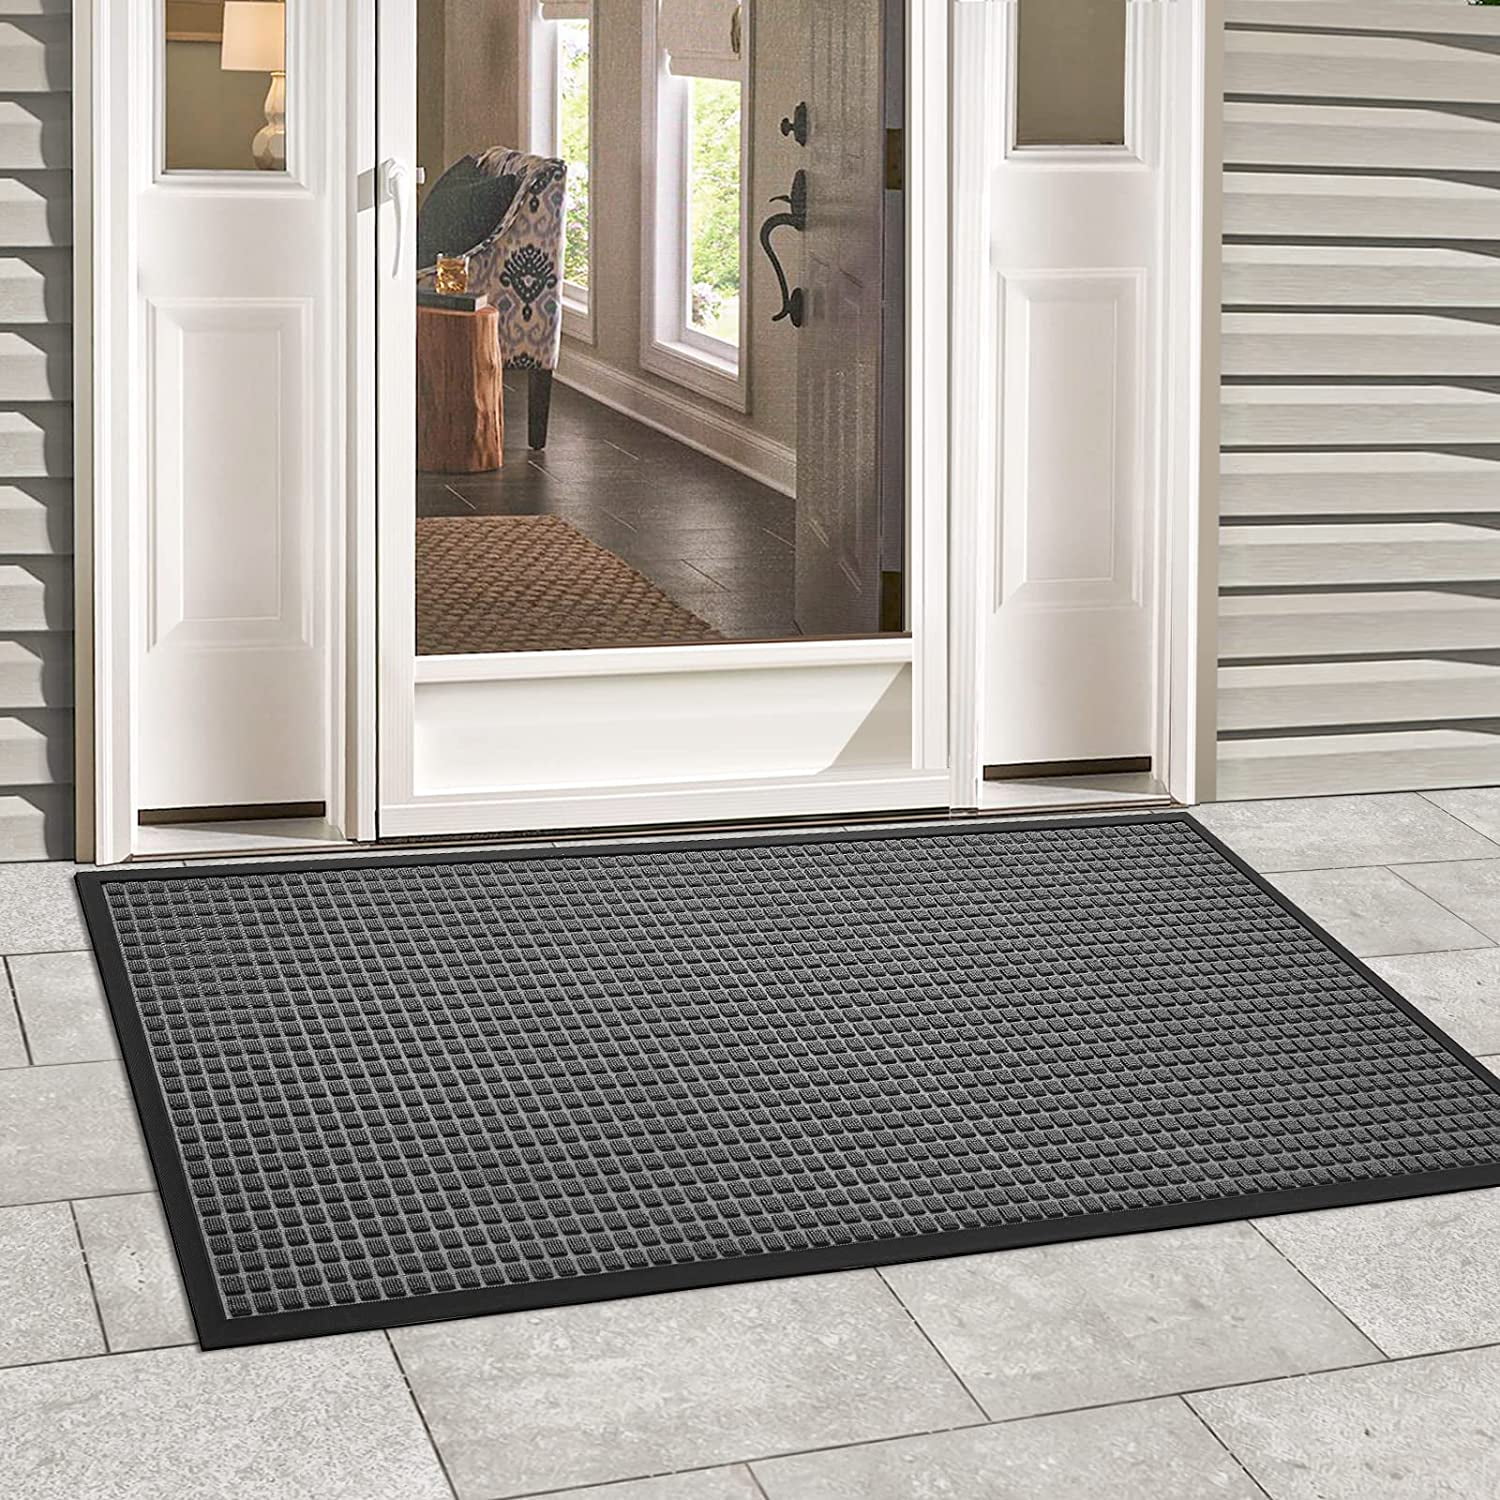 DEXI Front Door Mat Indoor Outdoor Doormat, Durable Heavy Duty